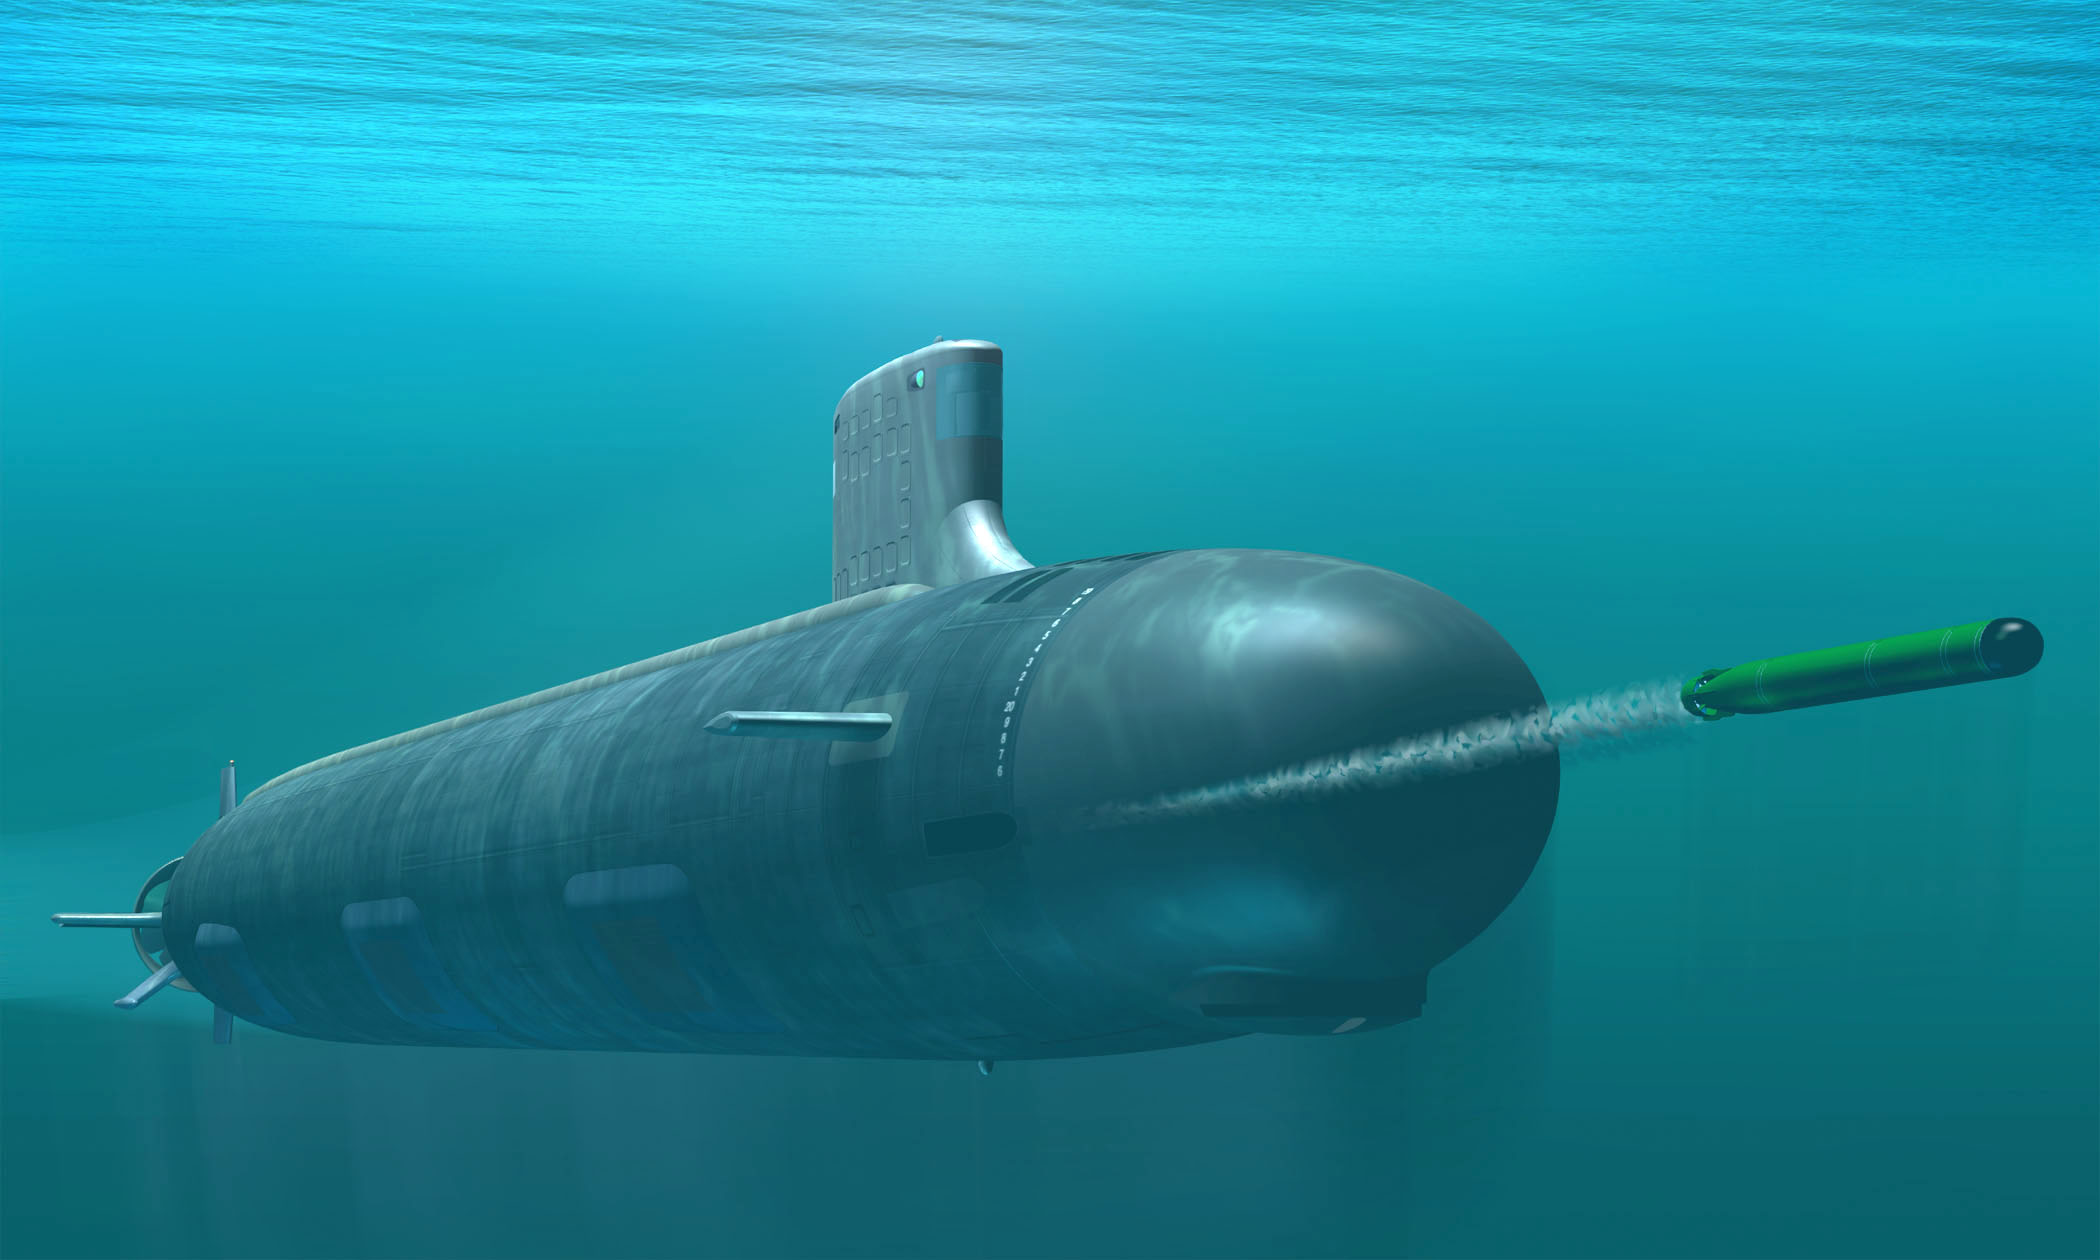 http://upload.wikimedia.org/wikipedia/commons/b/b7/Virginia_class_submarine.jpg